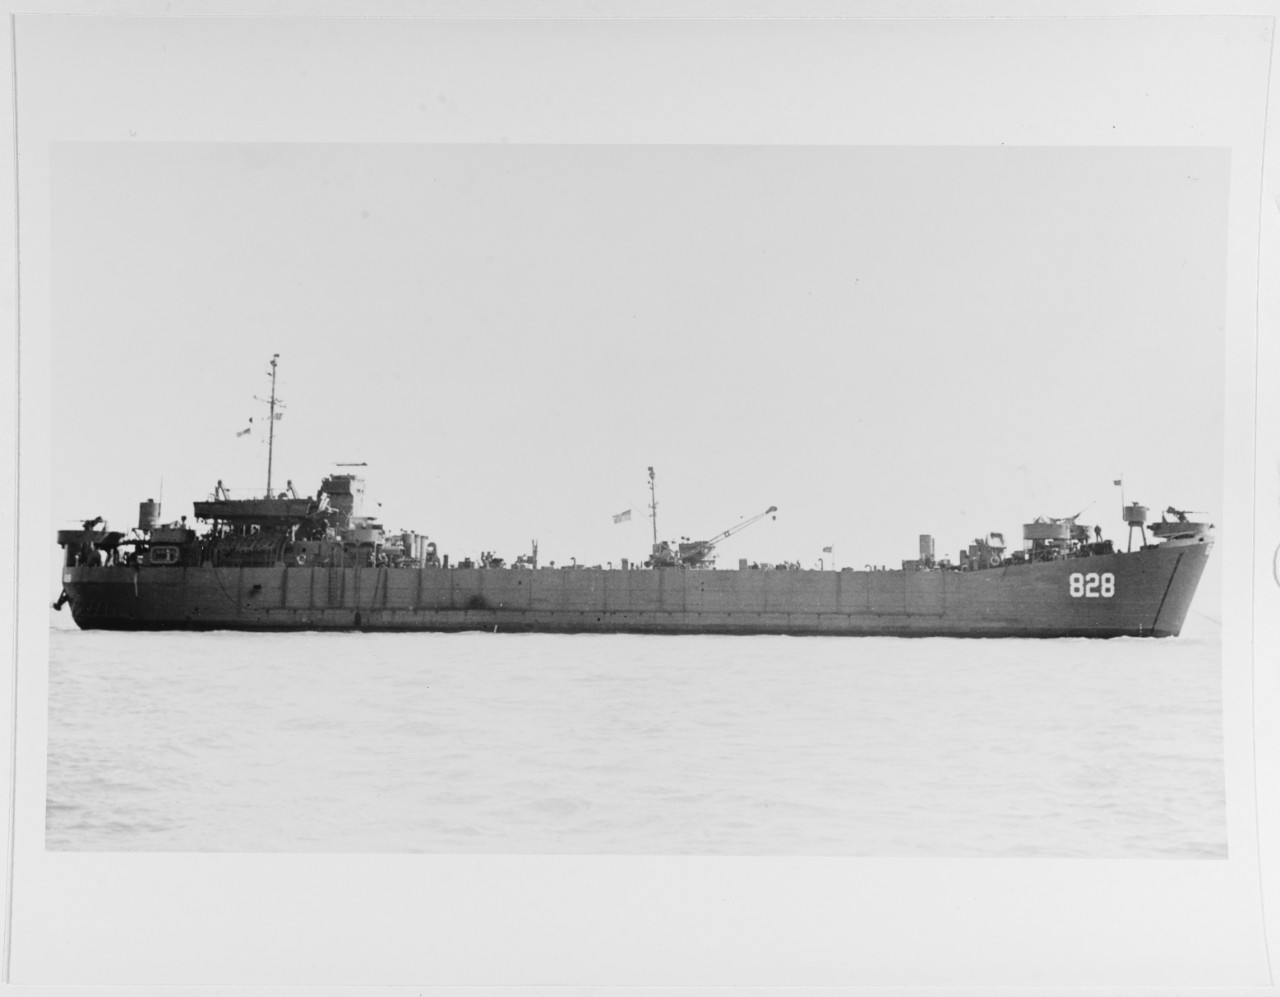 USS LST - 828